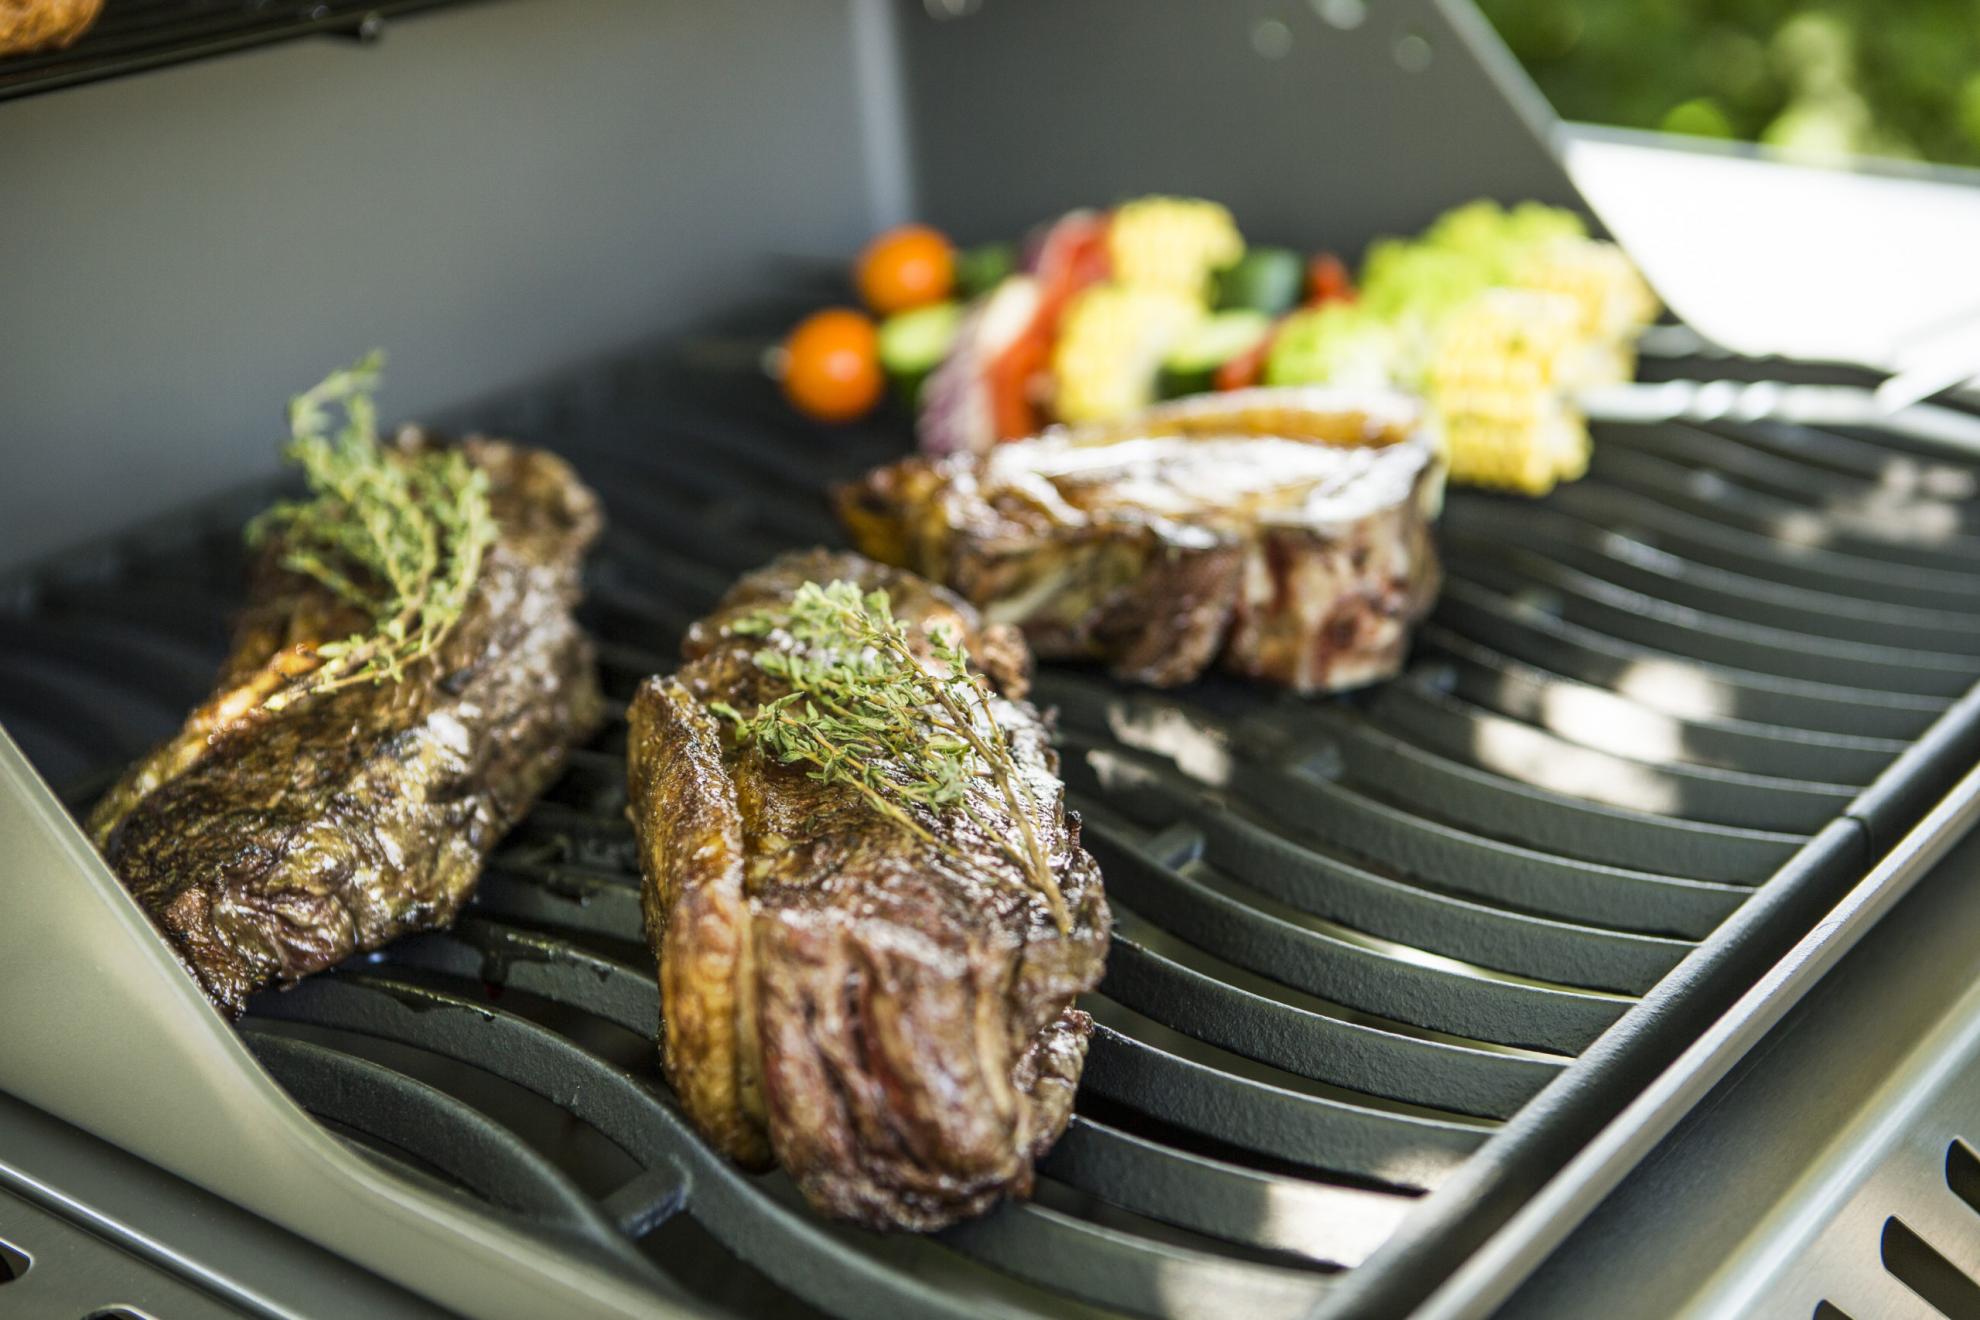 De beste tips voor een geslaagde BBQ in de tuin